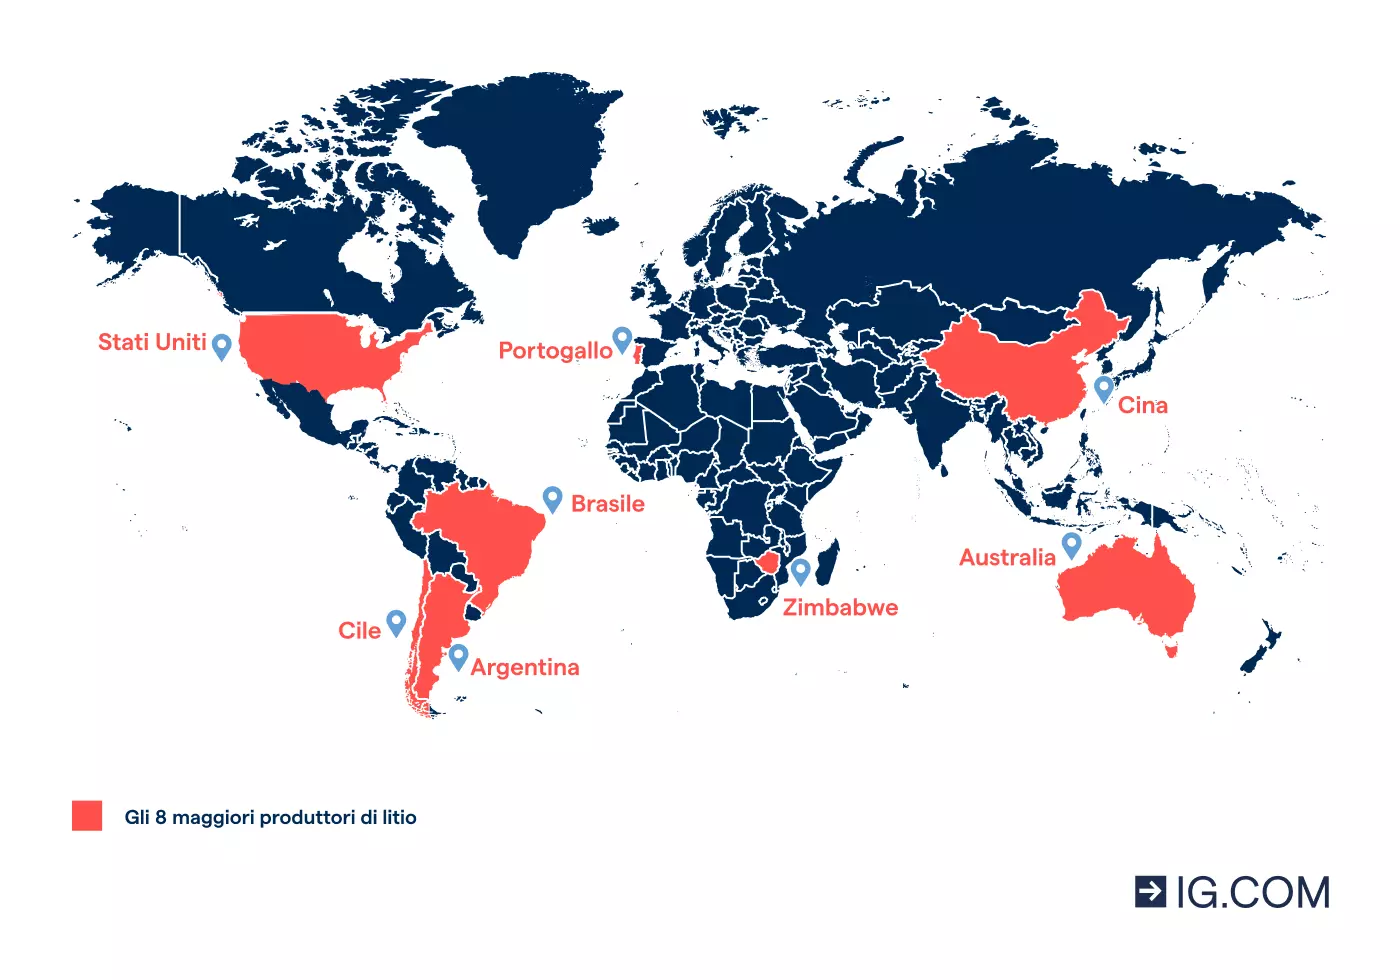 Mappa del mondo che evidenzia gli 8 maggiori Paesi produttori di litio al mondo